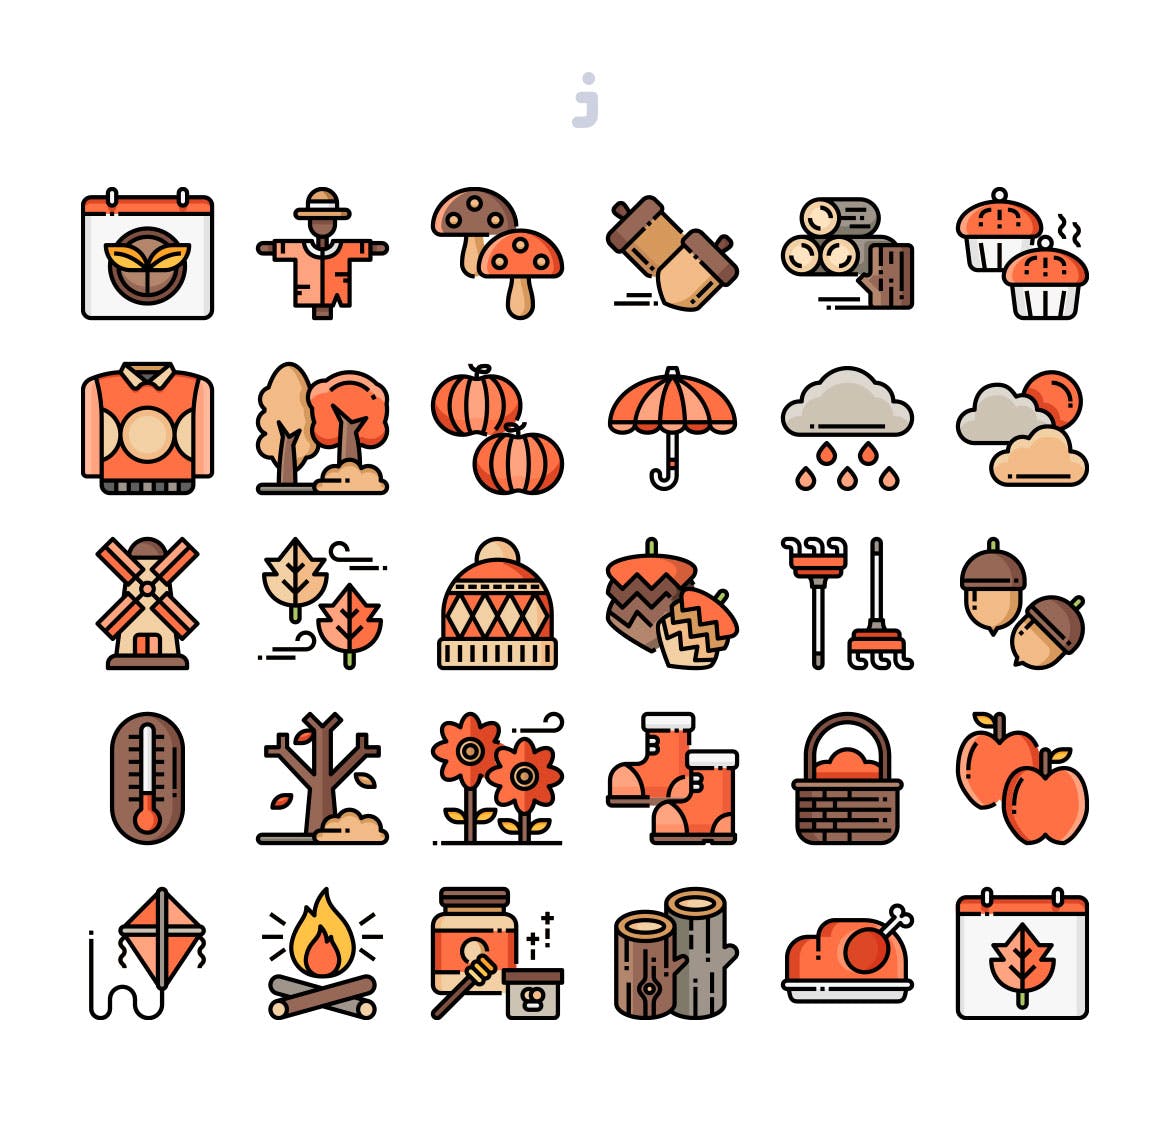 30枚秋天元素矢量图标素材 30 Autumn Season Icons插图(1)